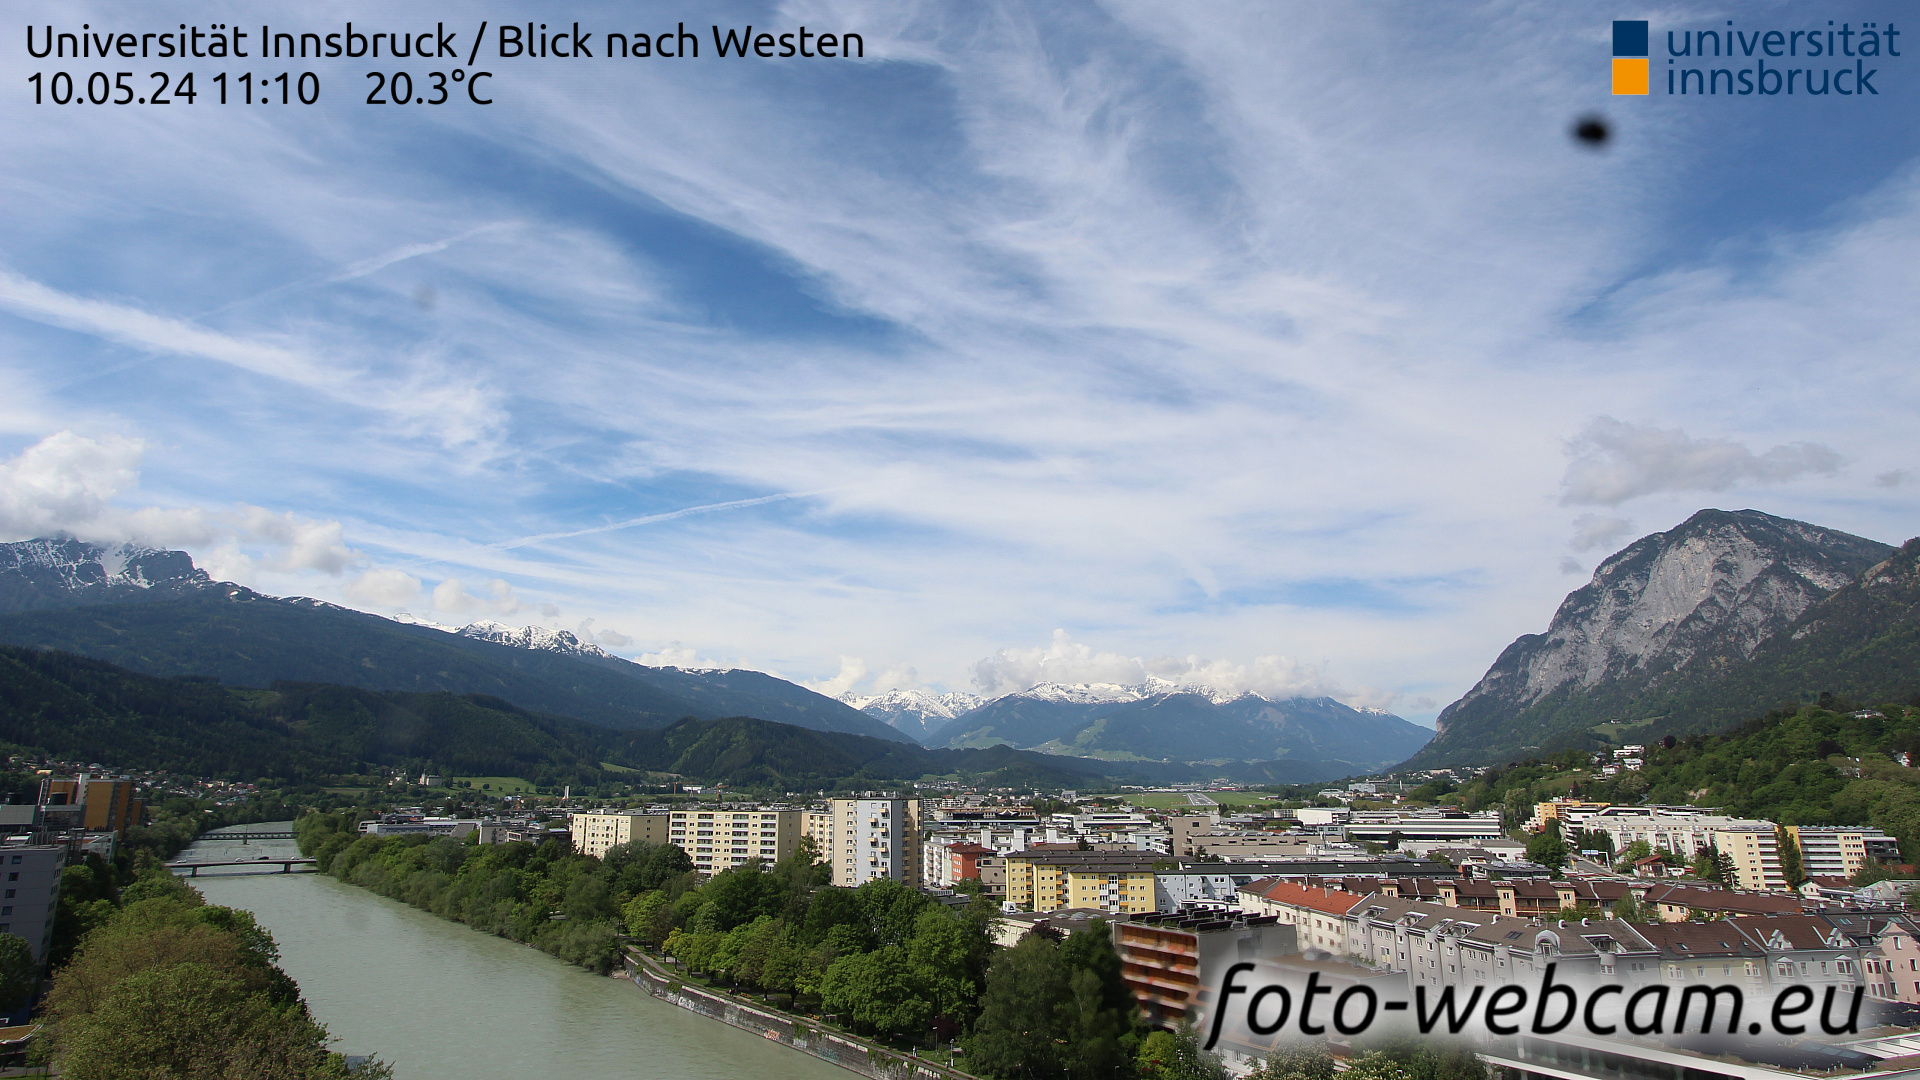 Innsbruck Thu. 11:17